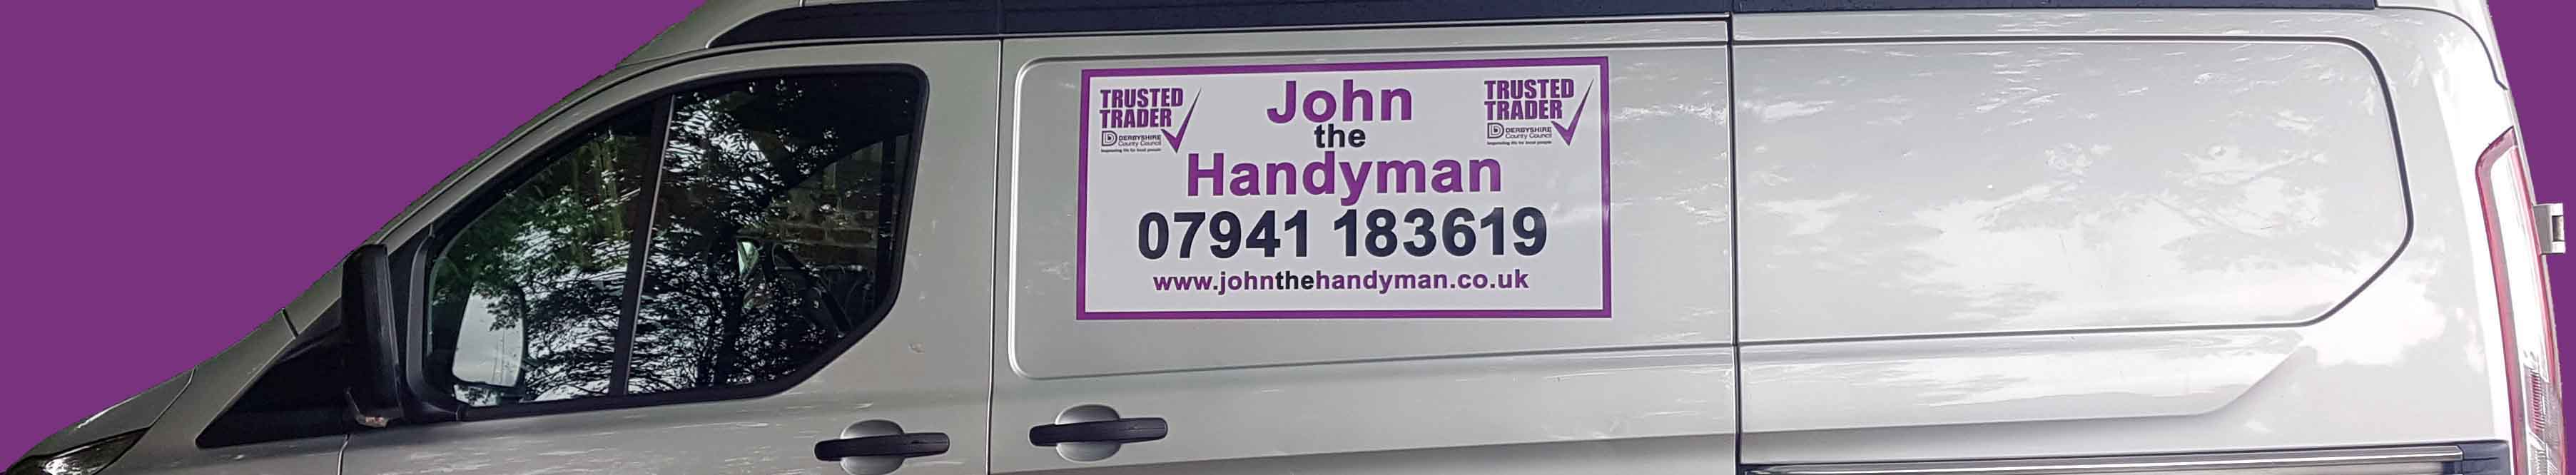 Handyman van header